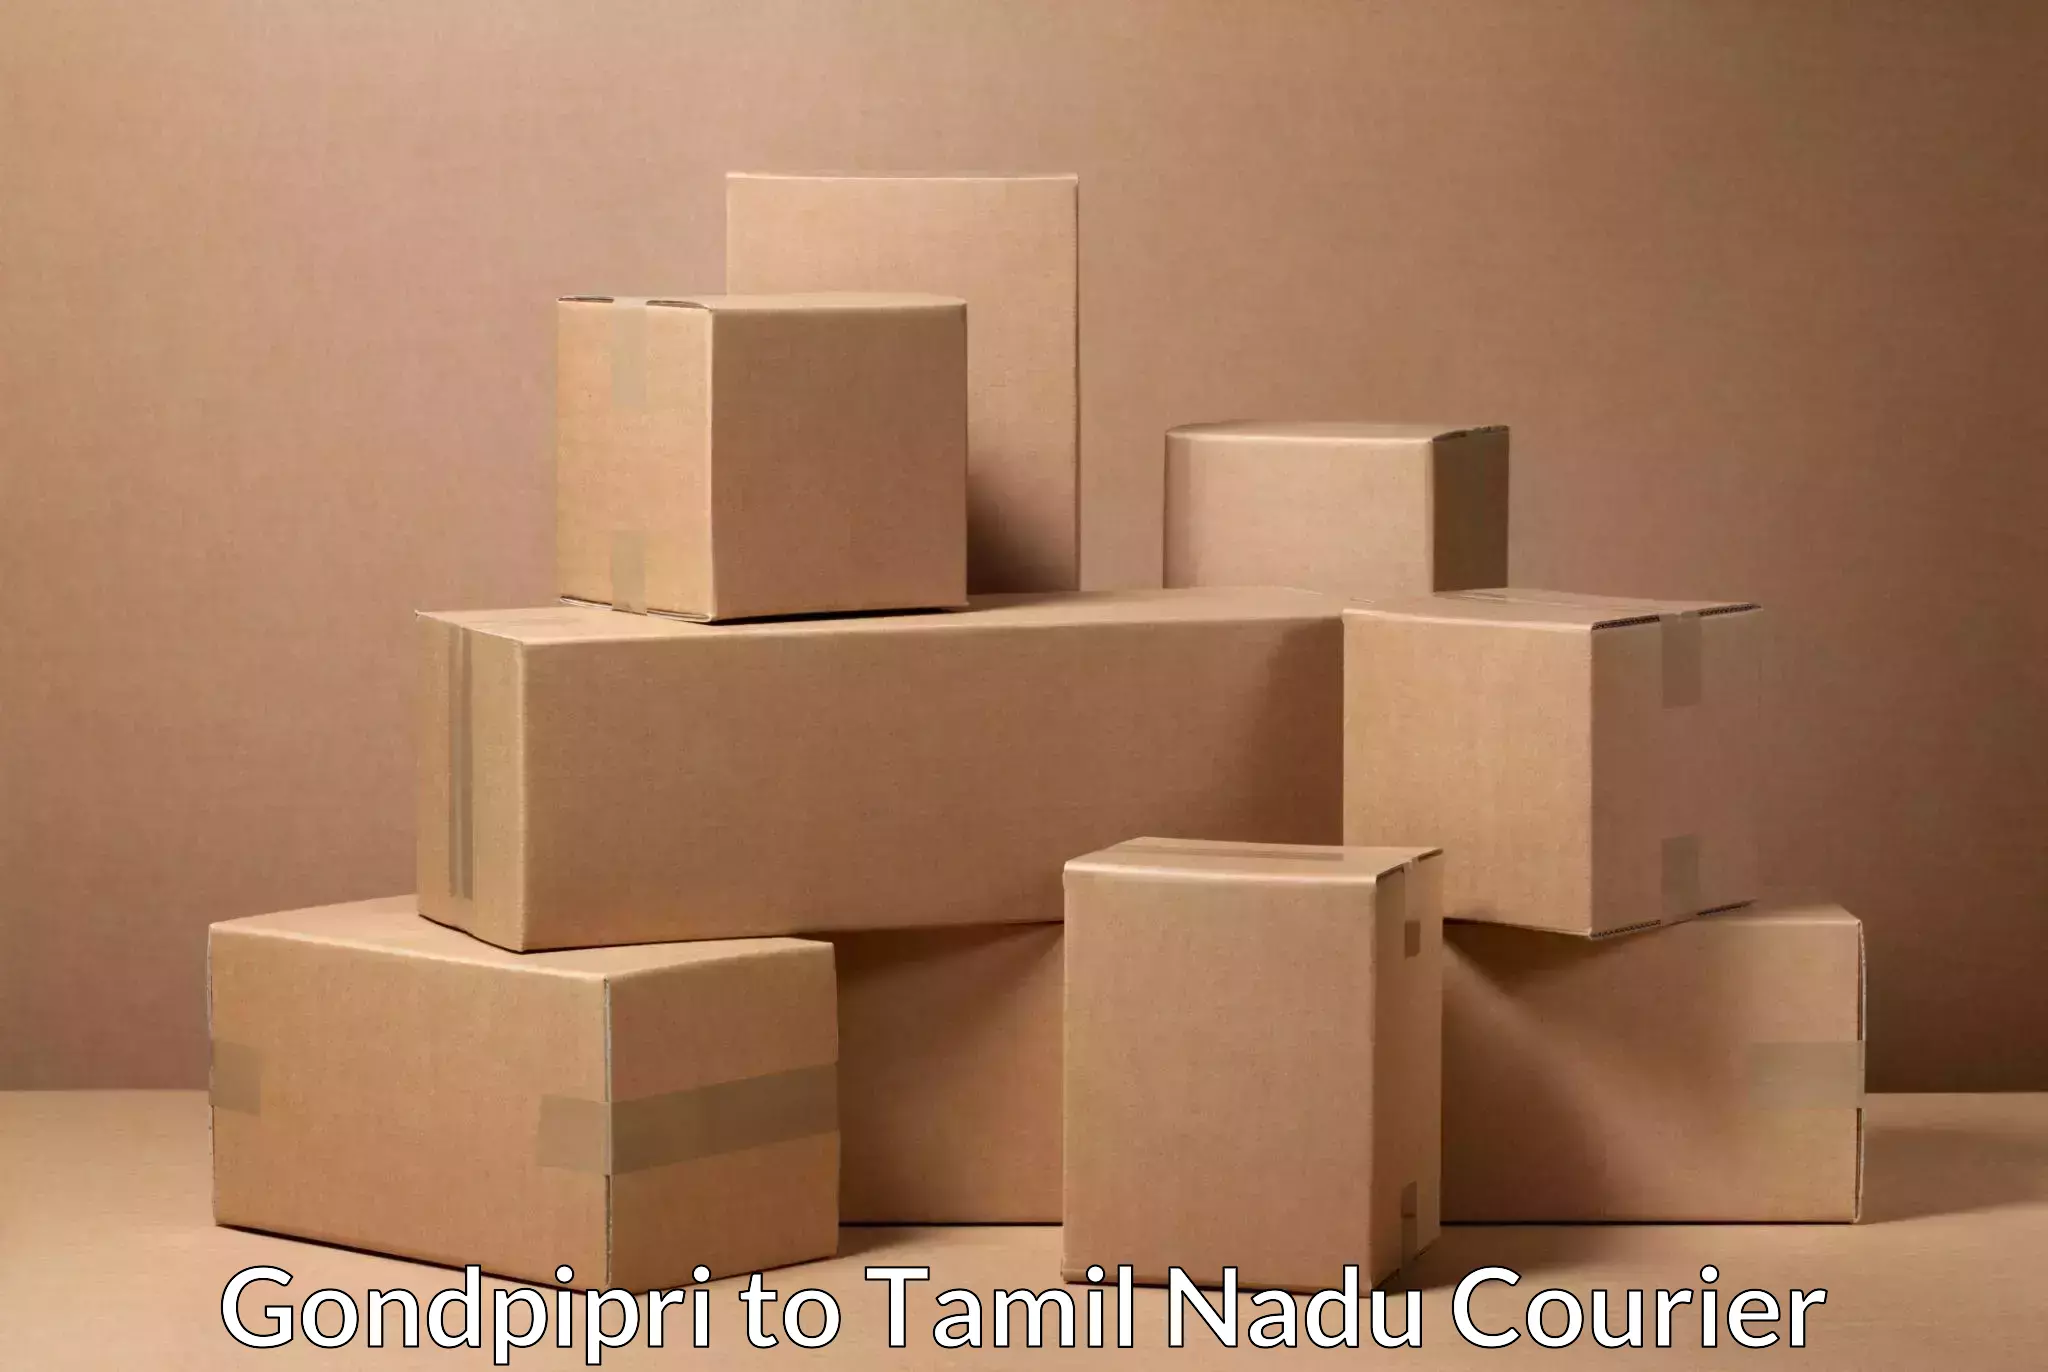 Bulk courier orders Gondpipri to Cuddalore